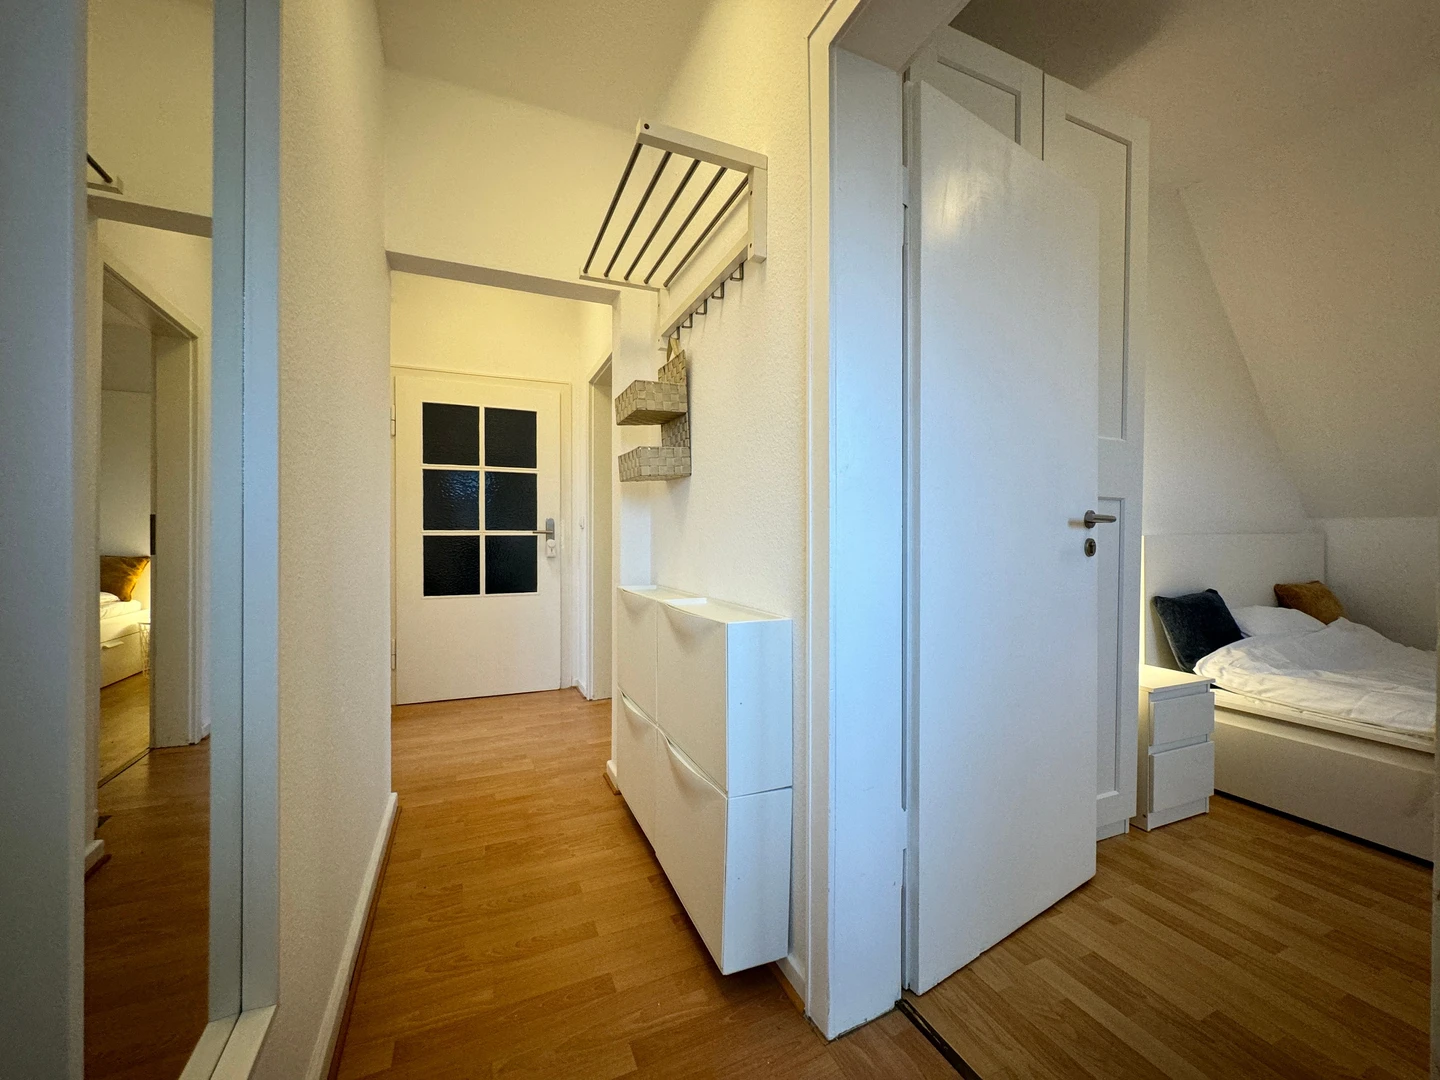 Bright private room in Bielefeld